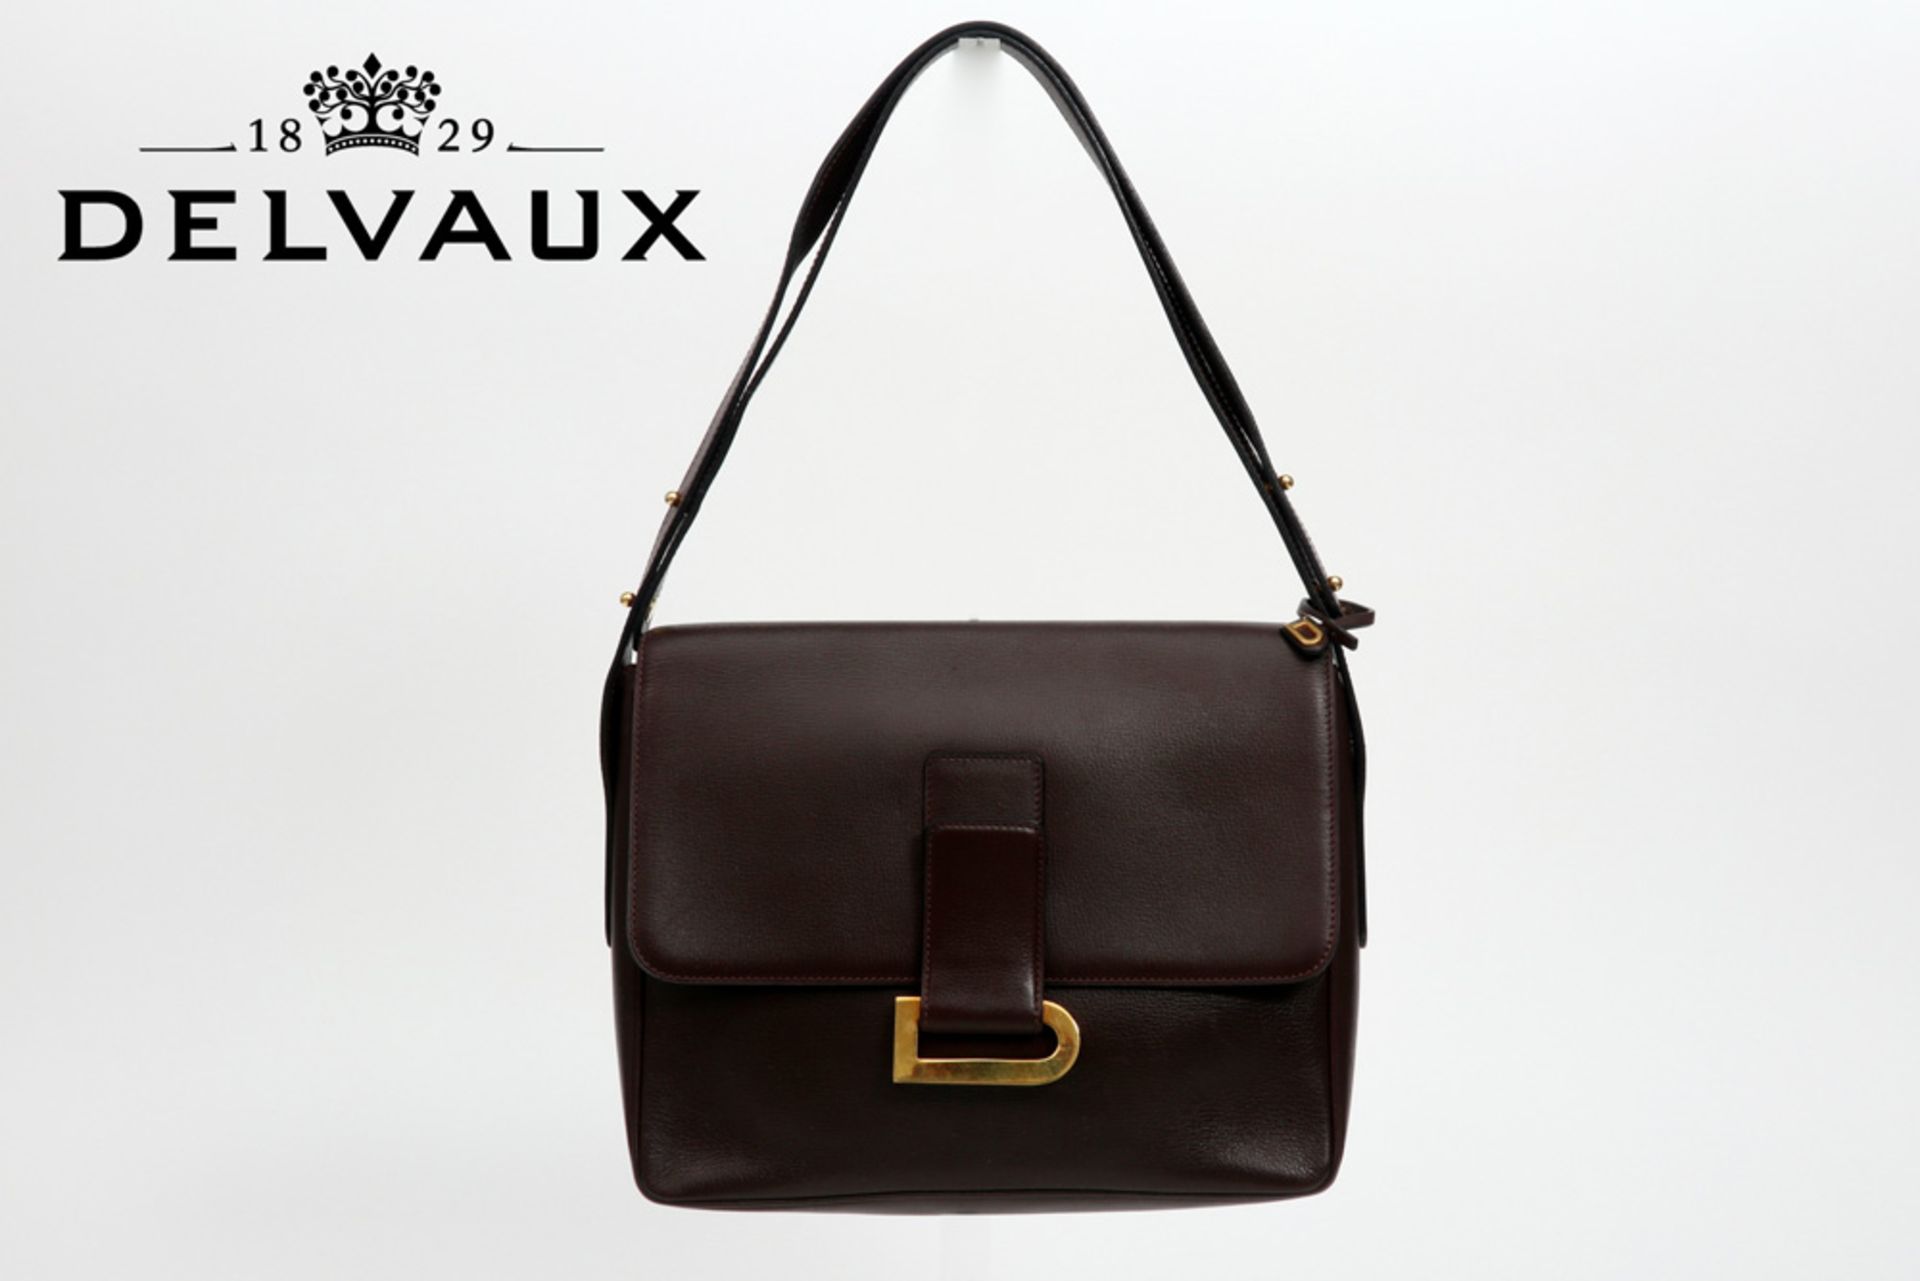 vintage Delvaux marked handbag in brown leather || DELVAUX klassieke vintage handtas in bruin